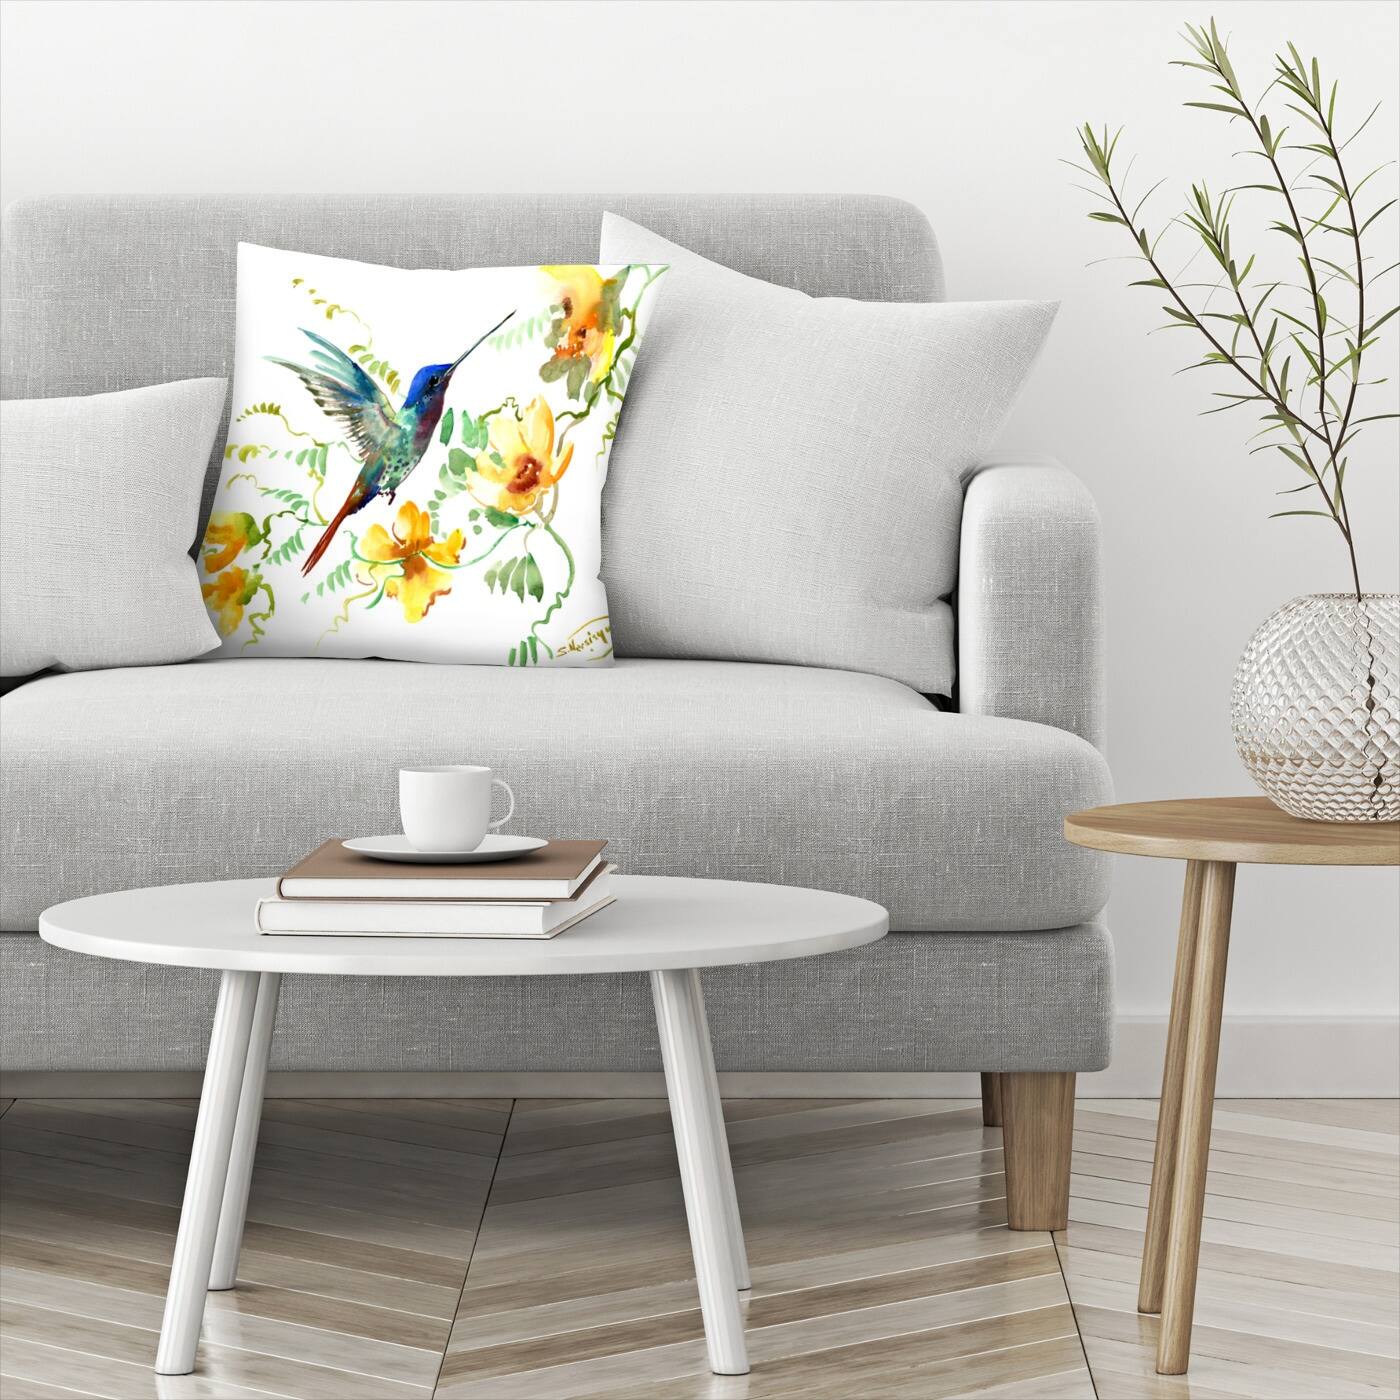 Hummingbird 2 - Decorative Throw Pillow